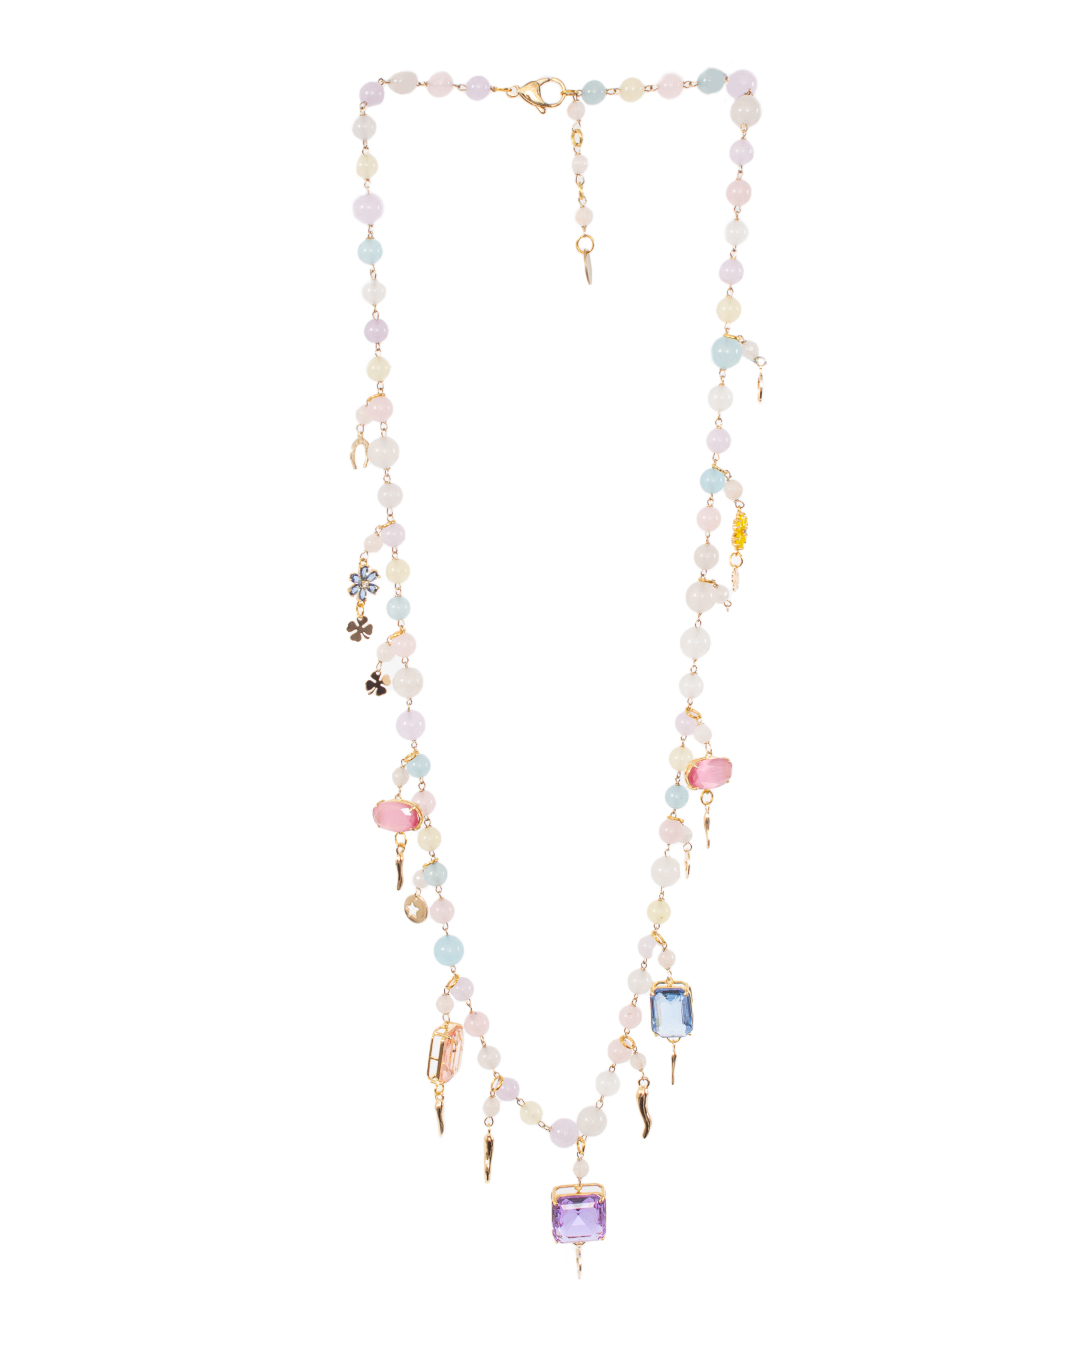 ожерелье Marina Fossati ILLYPILLI LUNGA6 фиолетовый+розовый+золотой UNI, размер UNI, цвет фиолетовый+розовый+золотой